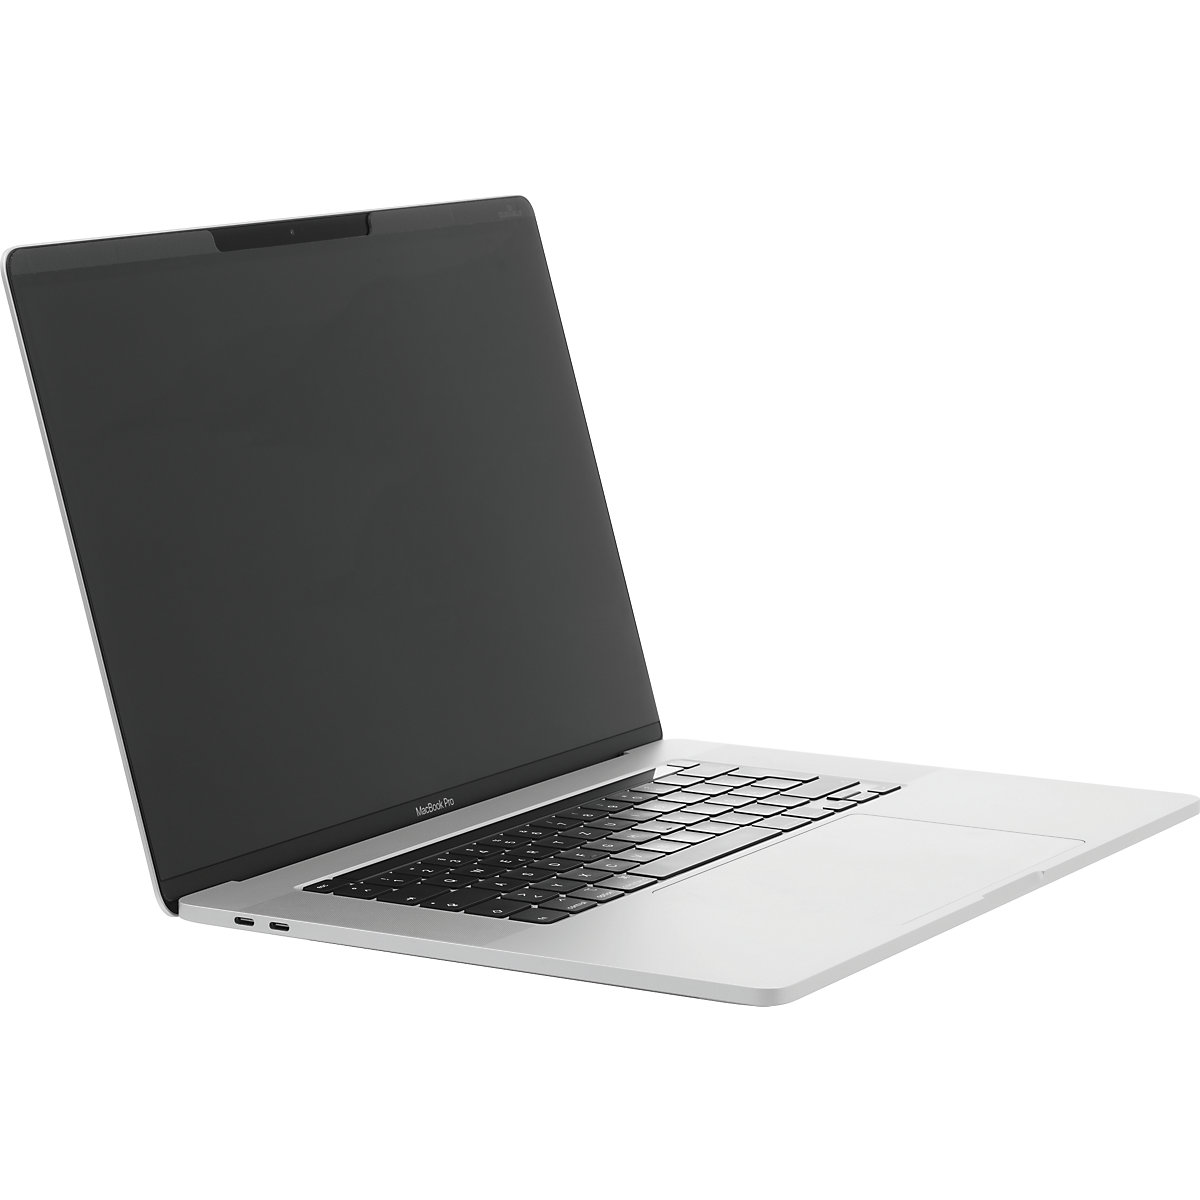 Filtr prywatyzujący MAGNETIC MacBook Pro® – DURABLE (Zdjęcie produktu 10)-9